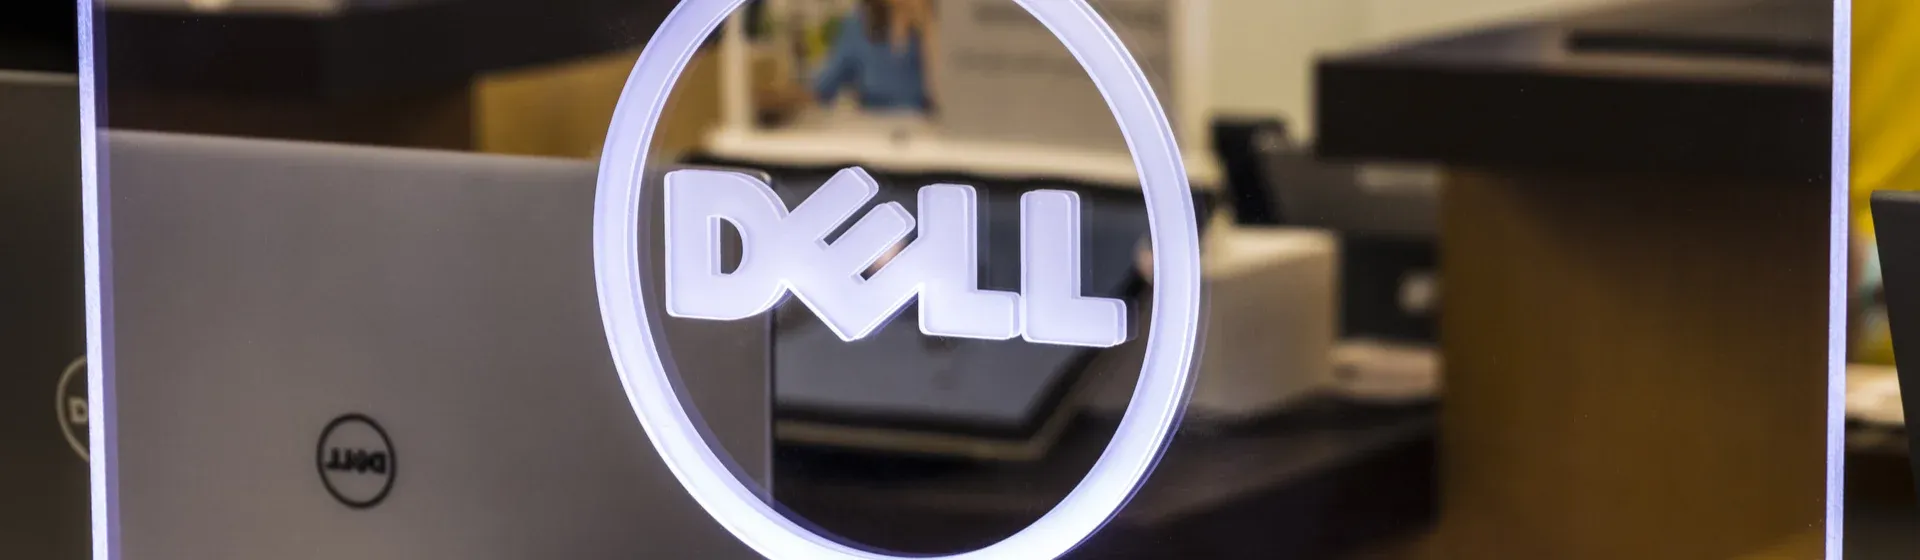 Dell Black Friday 2021: as ofertas de notebook e monitor da marca